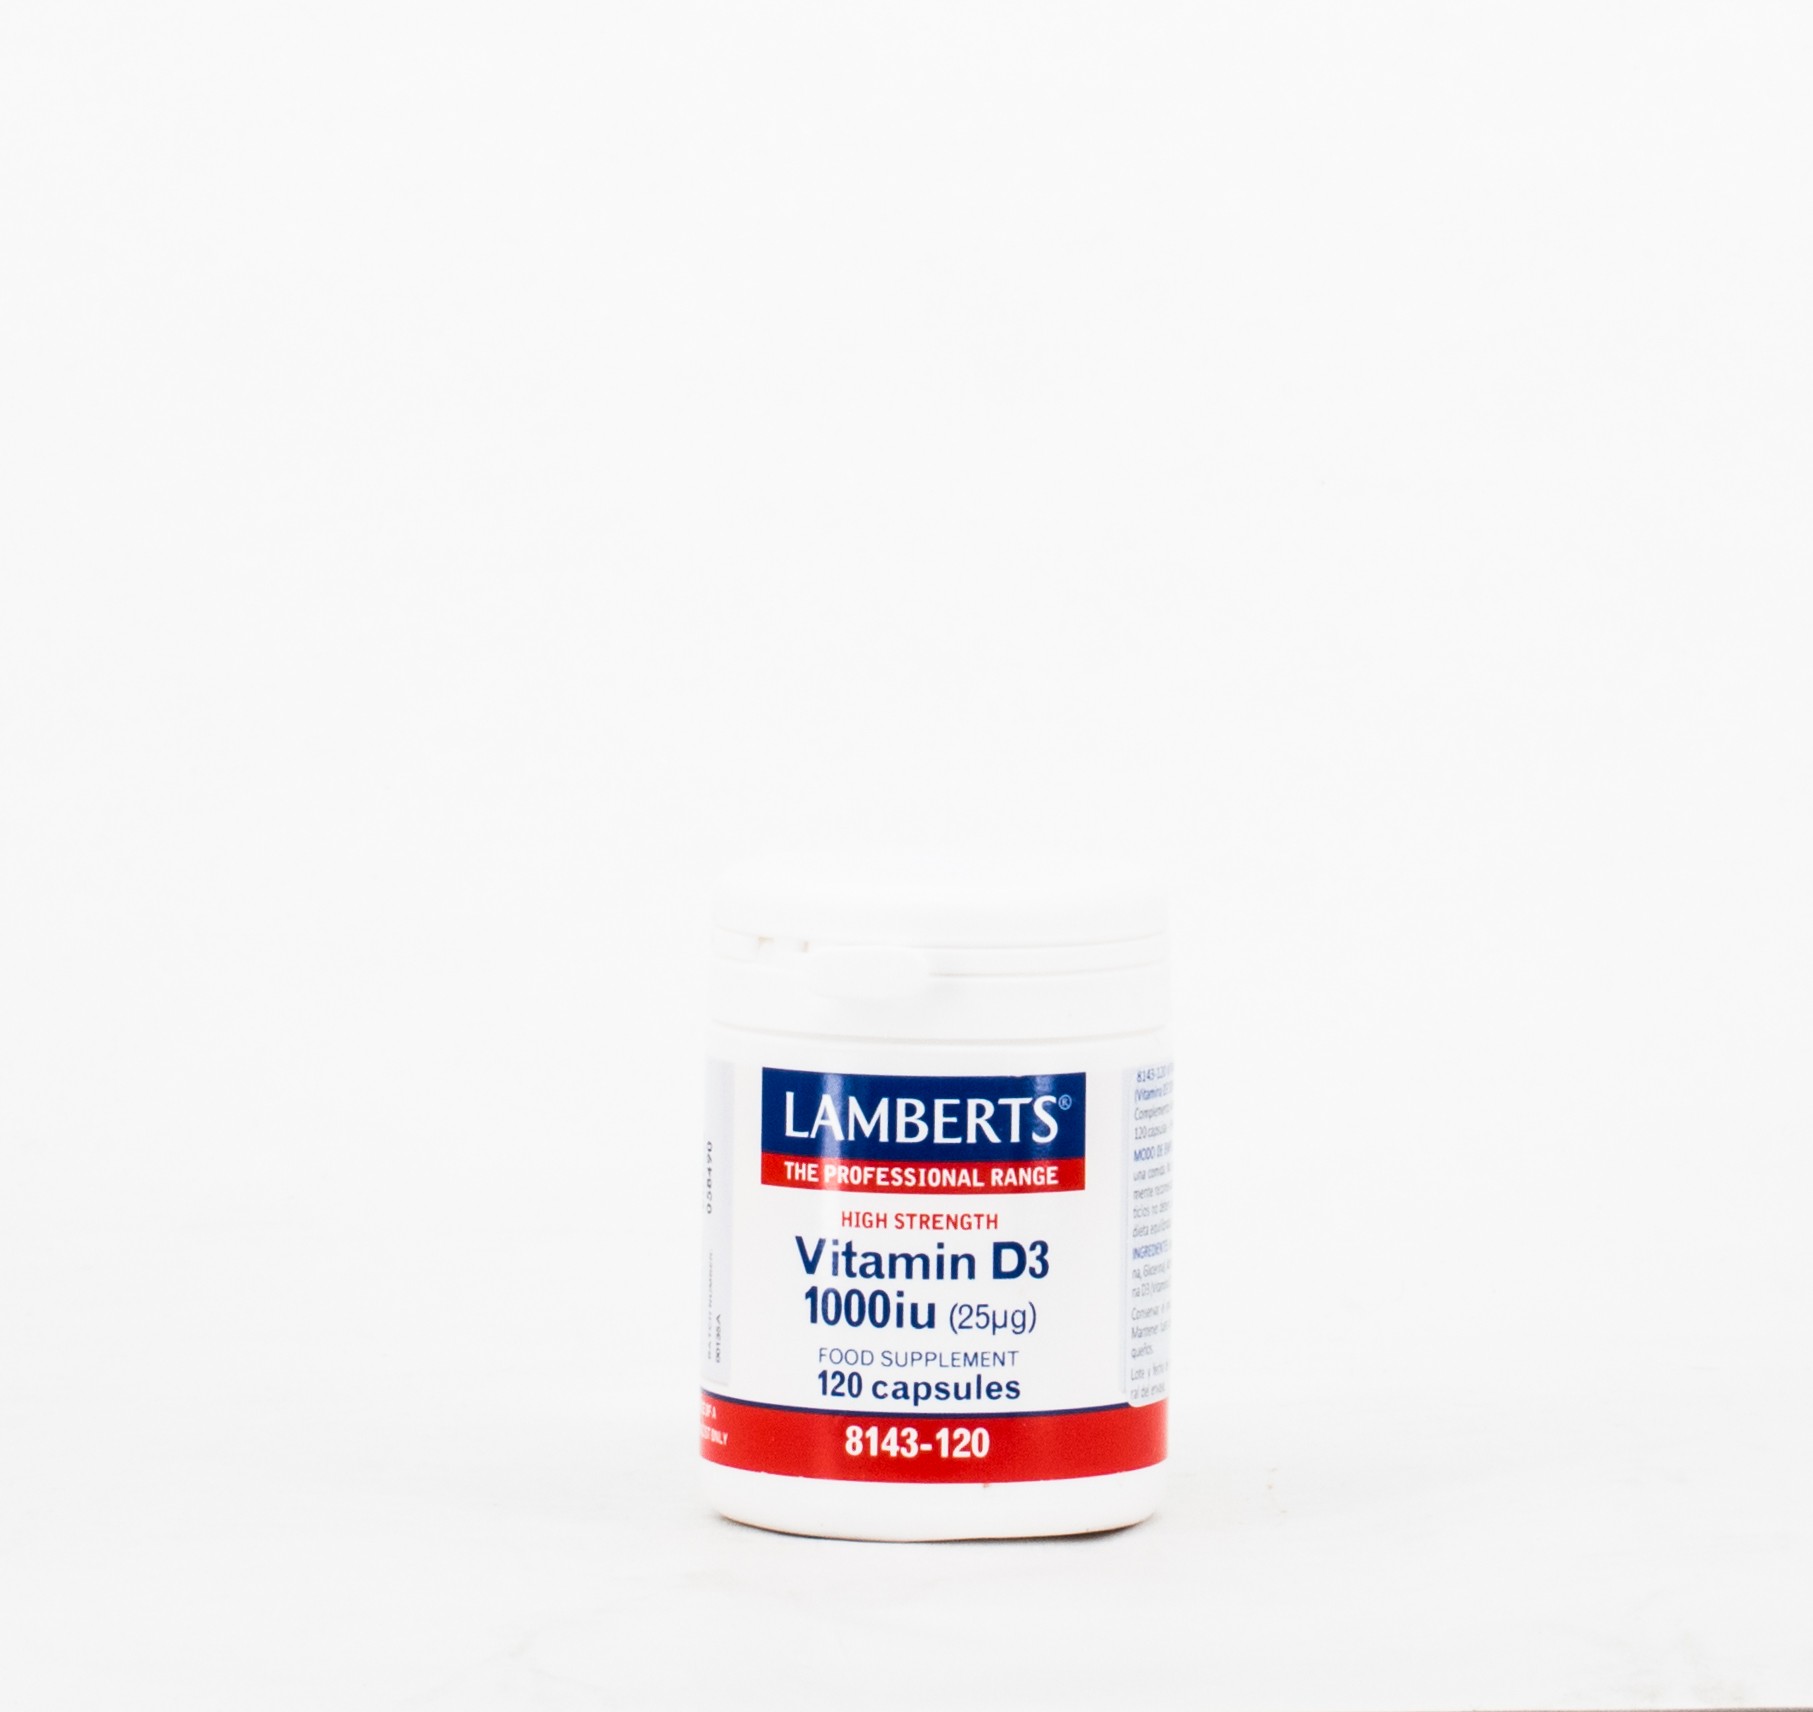 LAMBERTS Vitamina D3 1000UI (25 µg), 120 cápsulas.